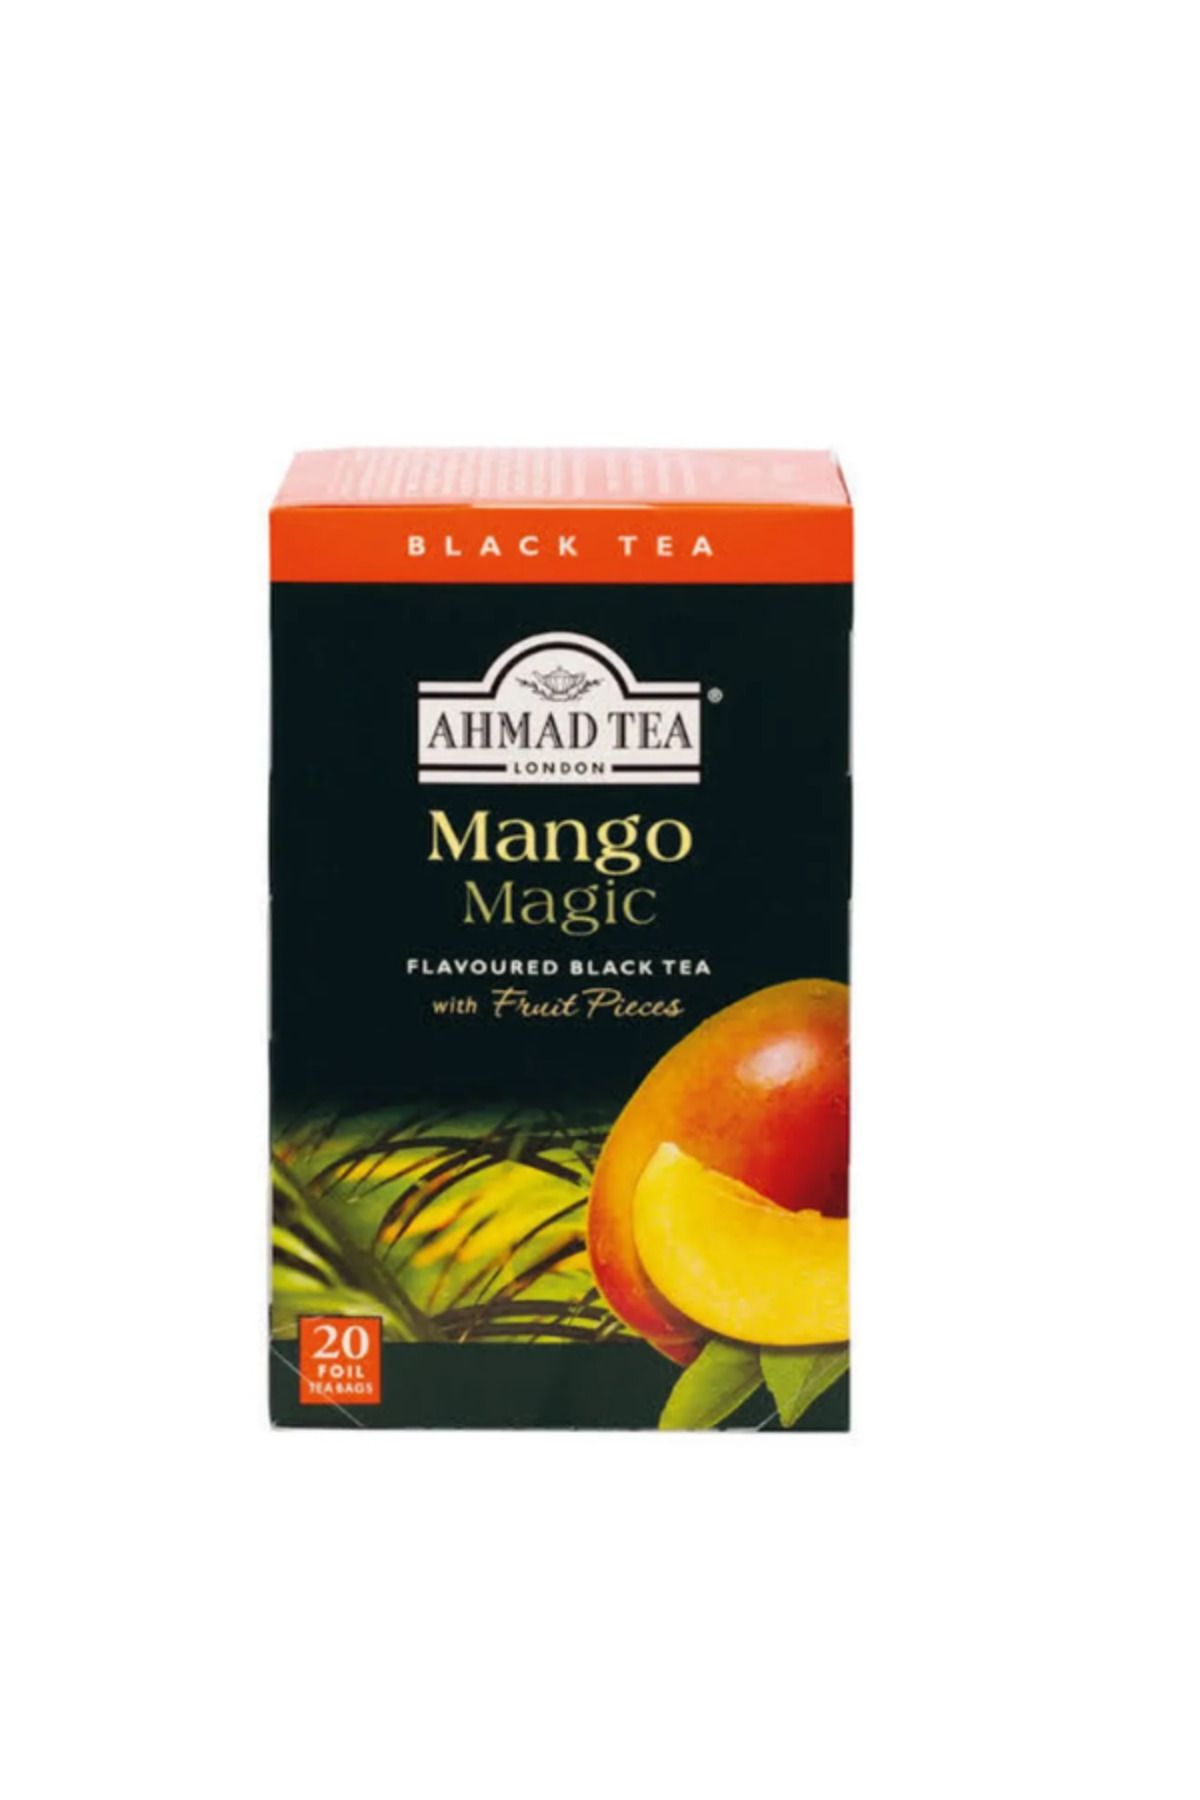 Ahmad Tea Mango Magic 20 Tea Bags Mangolu Siyah Çay 20 Li Organik